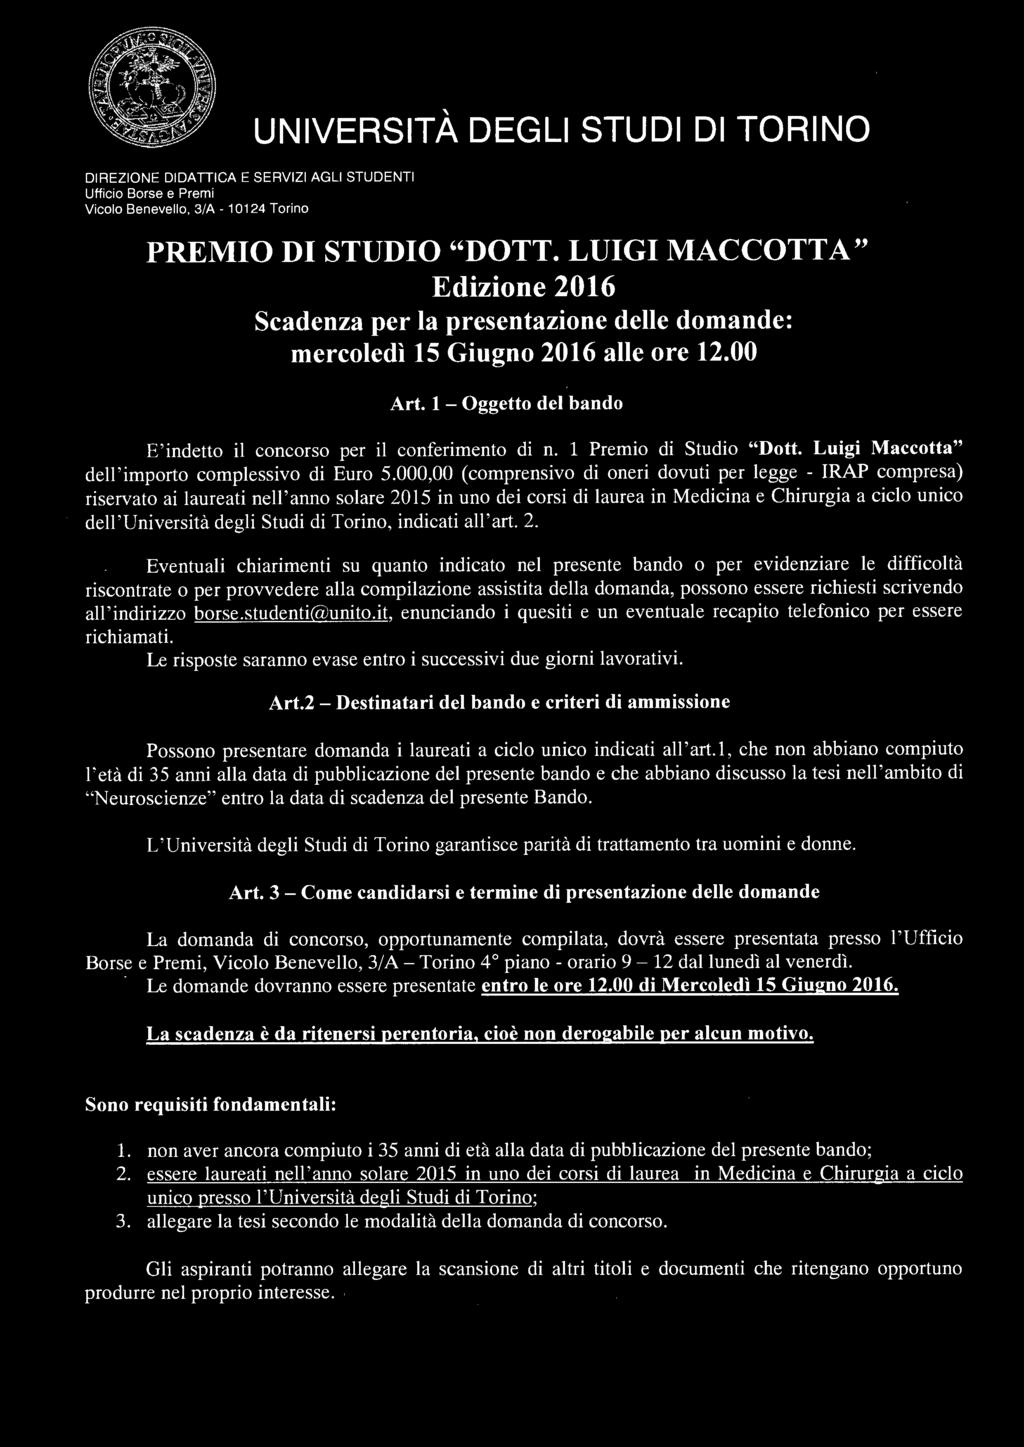 PREMIO DI STUDIO "DOTT. LUIGI MACCOTTA" Edizione 2016 Scadenza per la presentazione delle domande: mercoledì 15 Giugno 2016 alle ore 12.00 Art.